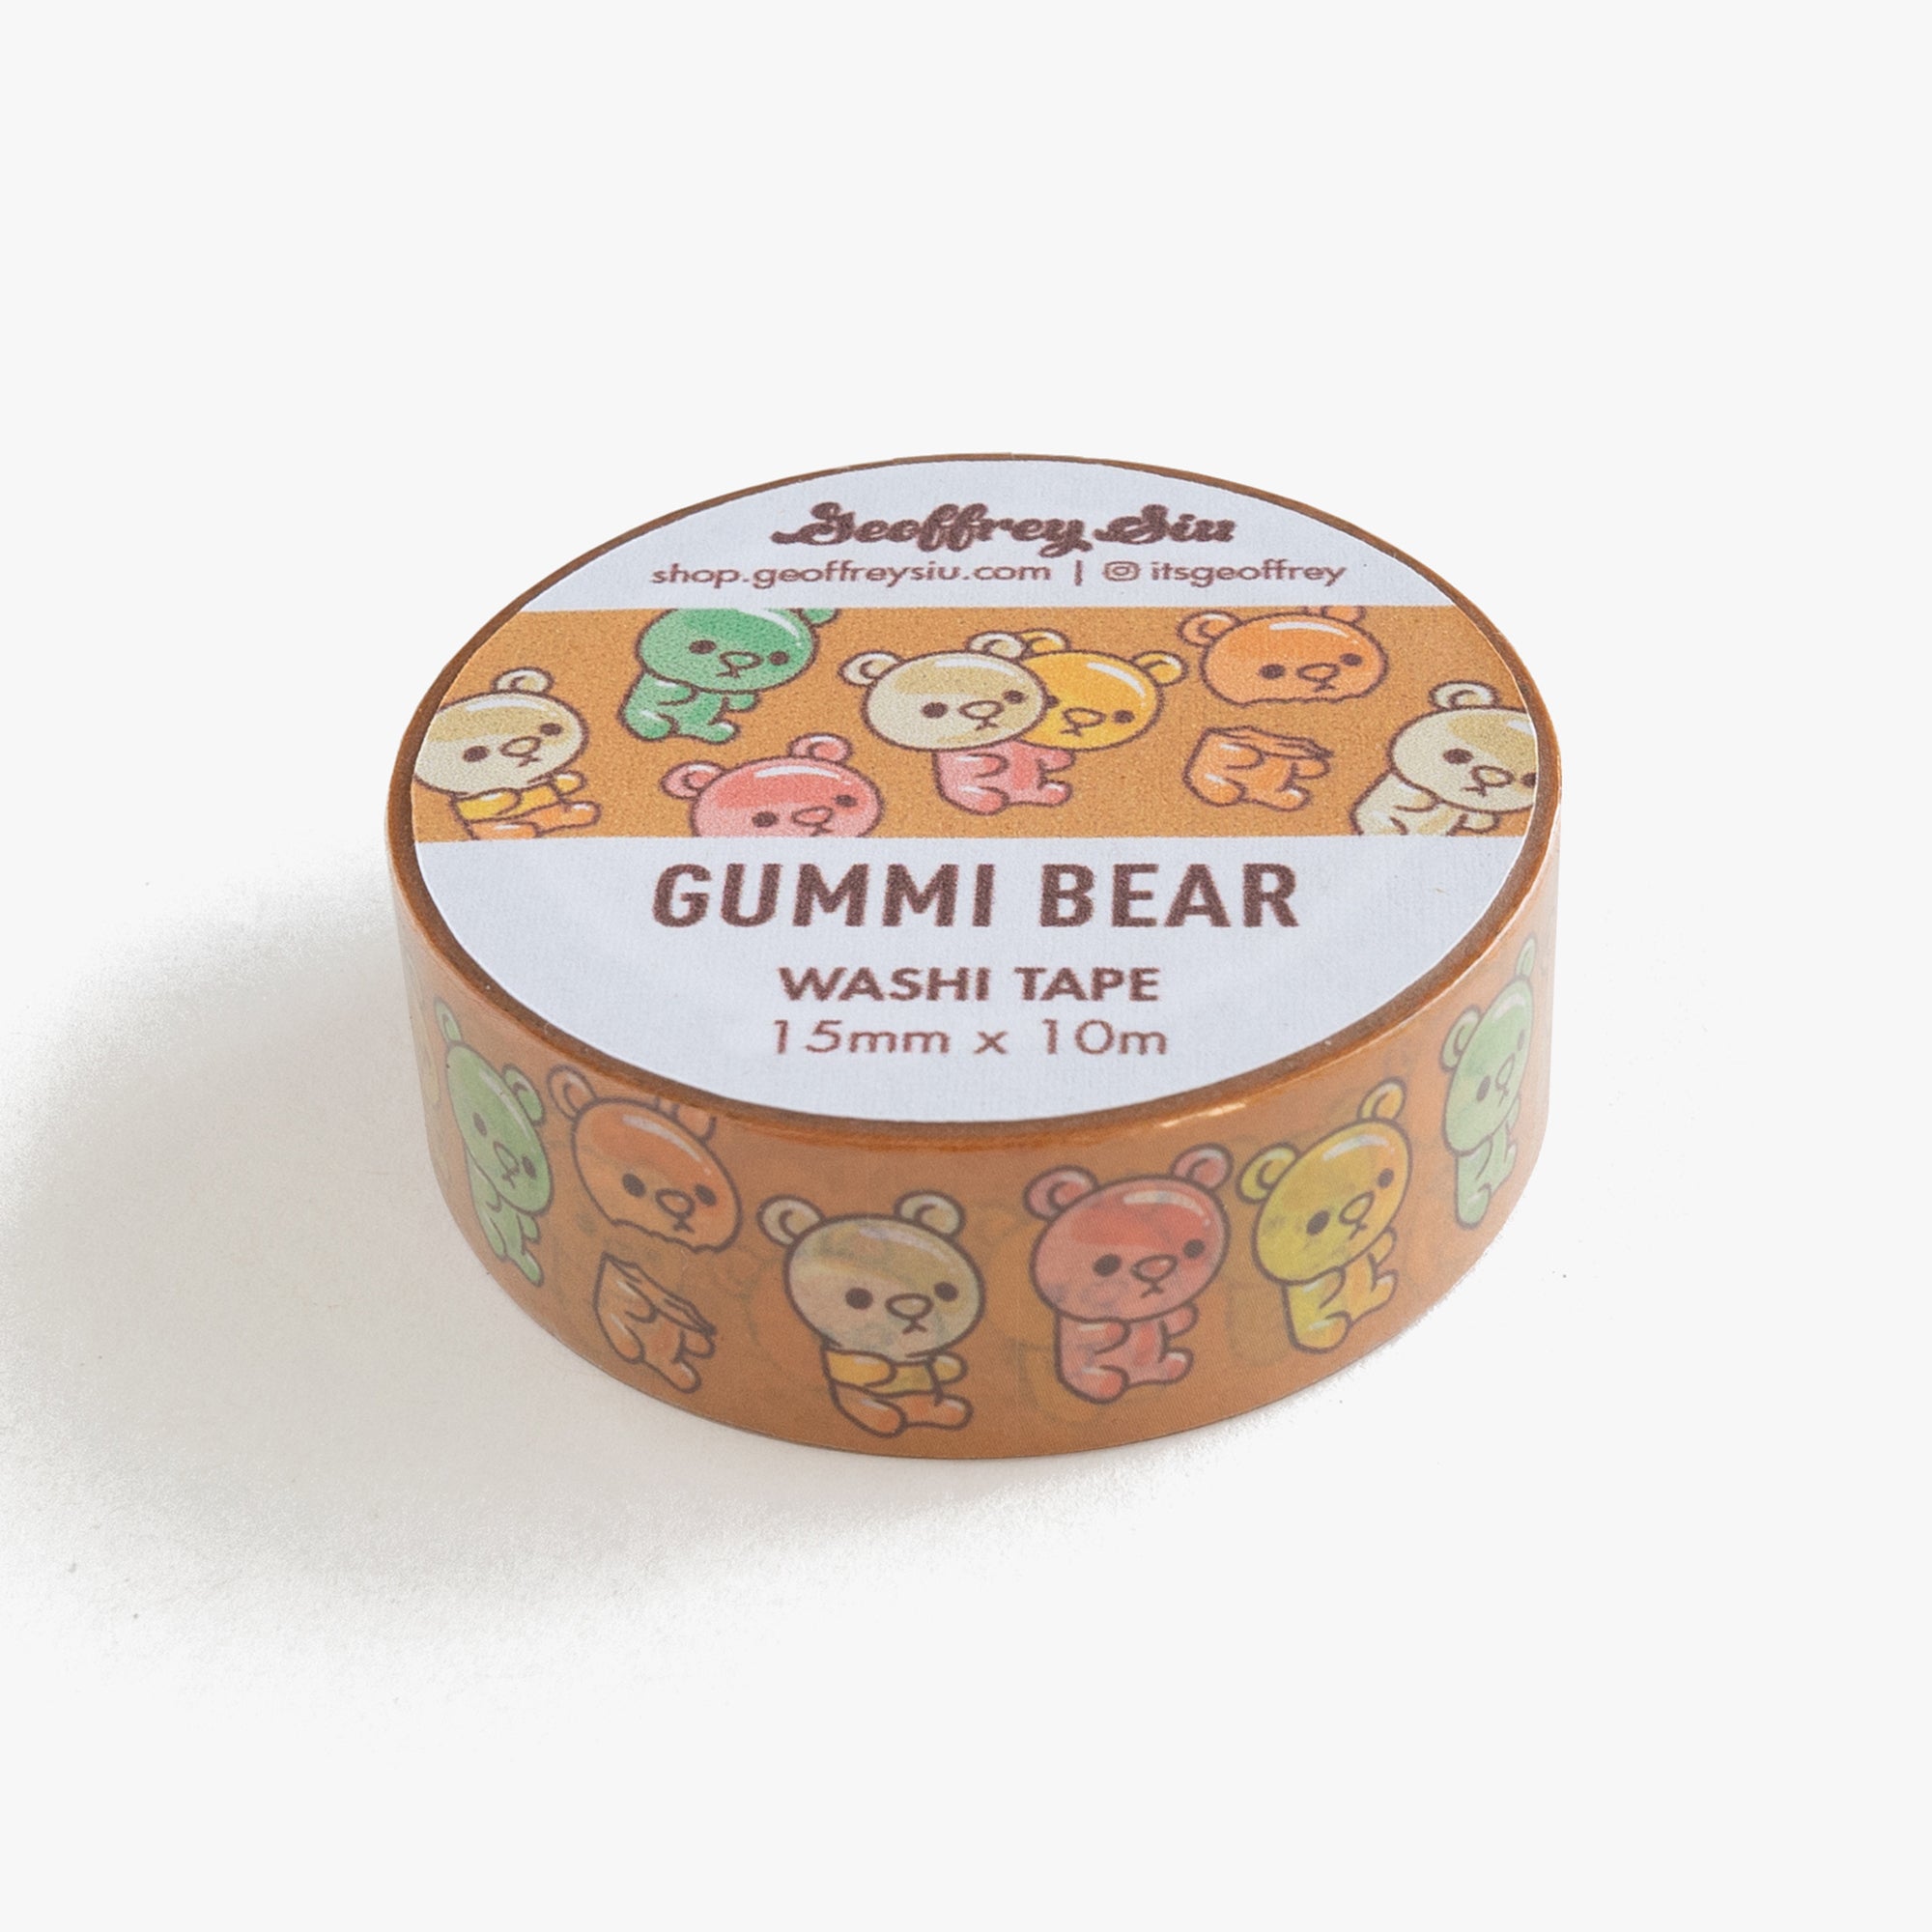 Gummi Bear Washi Tape